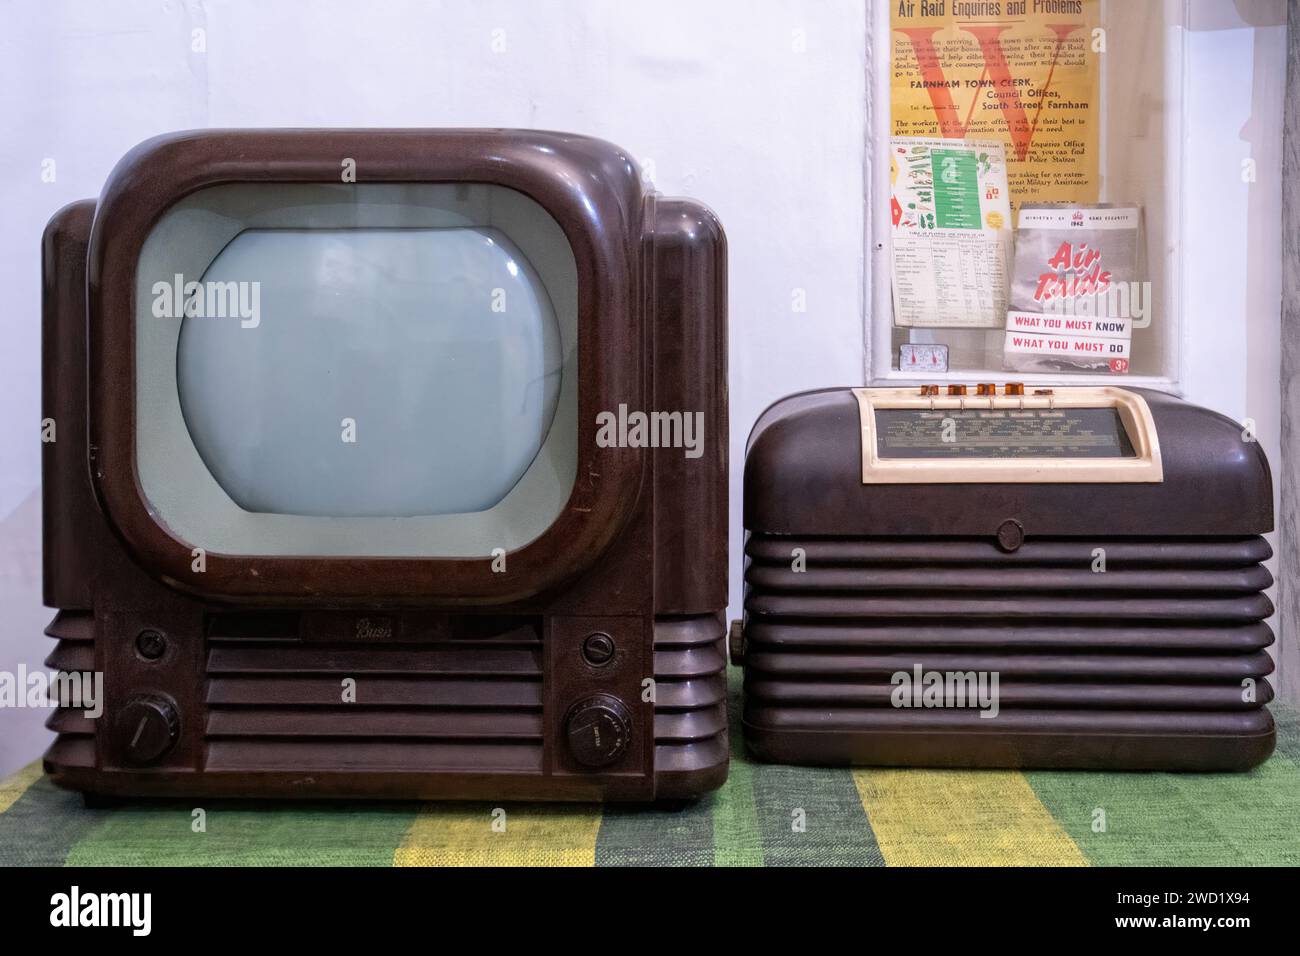 Un téléviseur des années 1950 et une radio sans fil, des expositions rétro vintage dans un musée, Angleterre, Royaume-Uni Banque D'Images